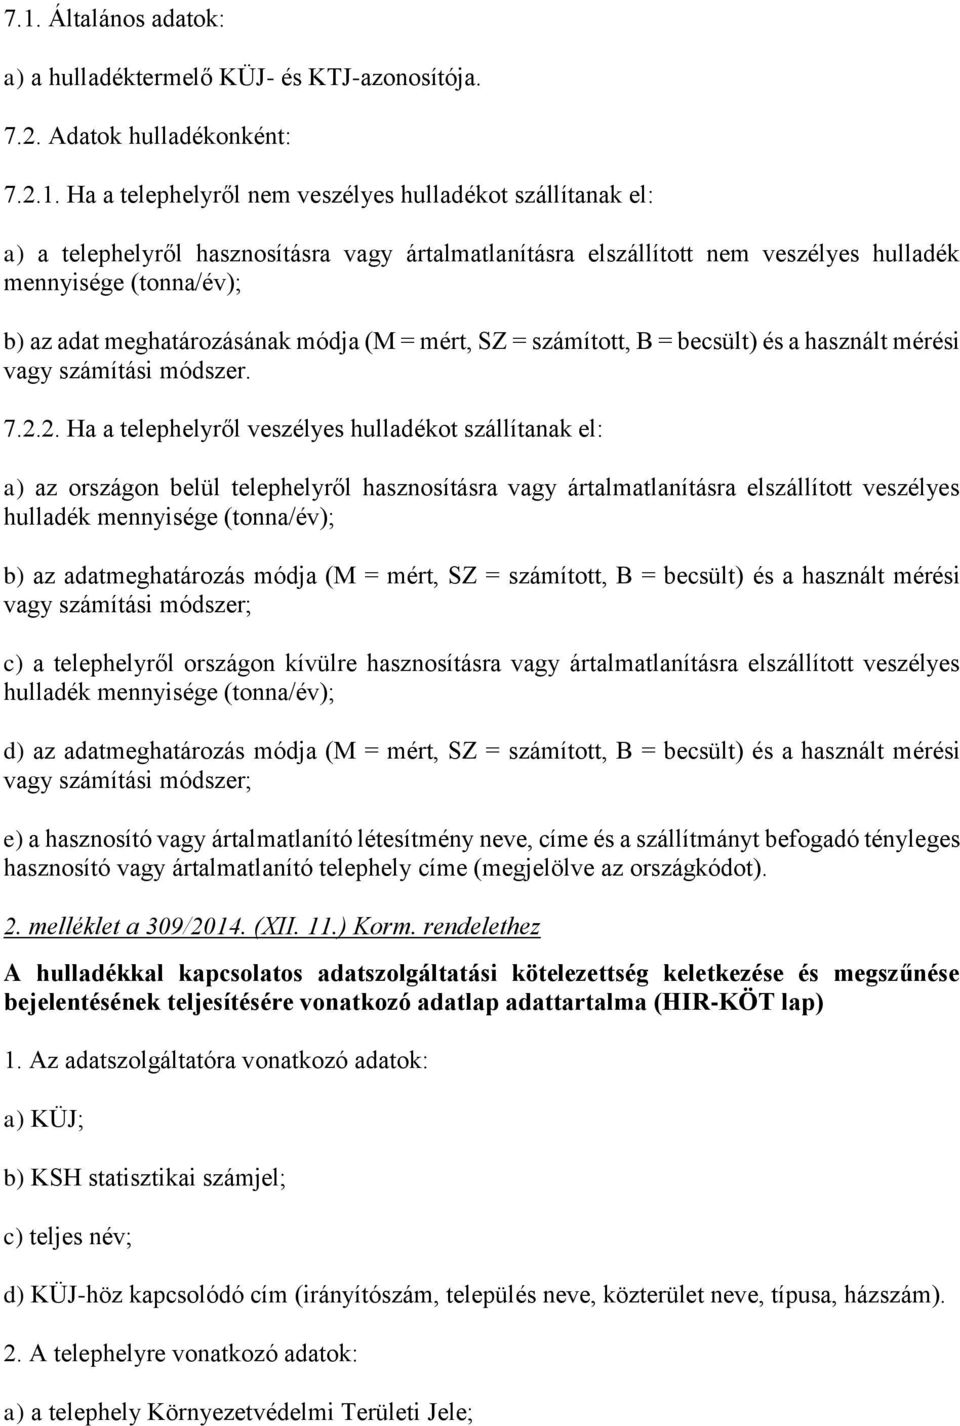 309/2014. (XII. 11.) Korm. rendelet Hatályos: a hulladékkal kapcsolatos  nyilvántartási és adatszolgáltatási kötelezettségekről - PDF Ingyenes  letöltés